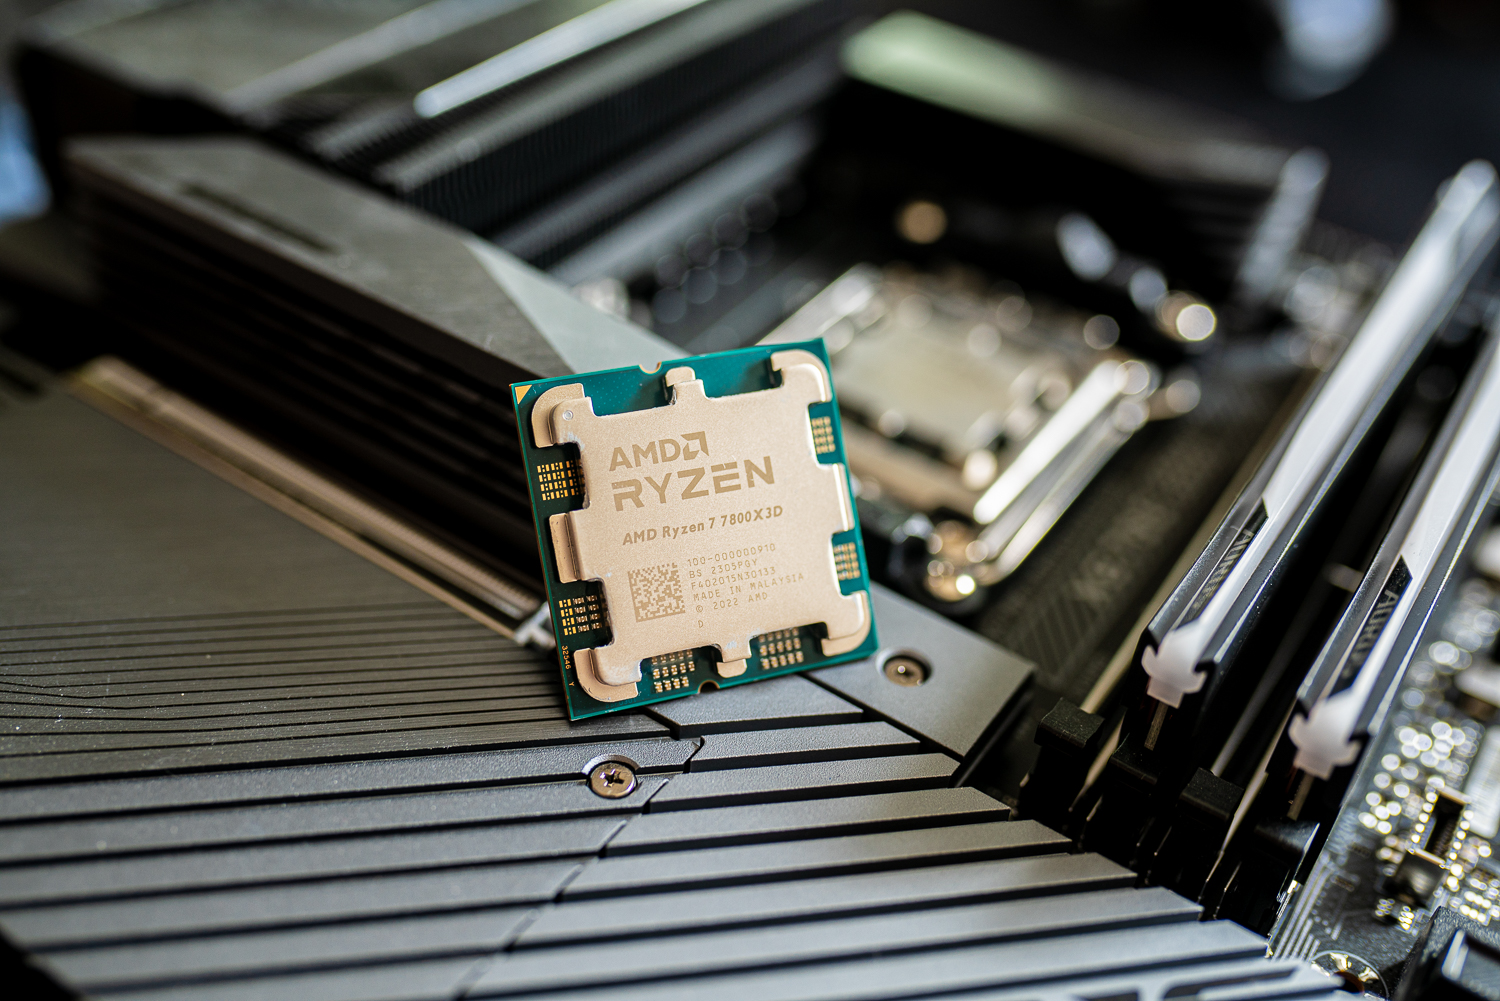 AMD Ryzen 7 7800X3D एक मदरबोर्ड पर बैठा है।